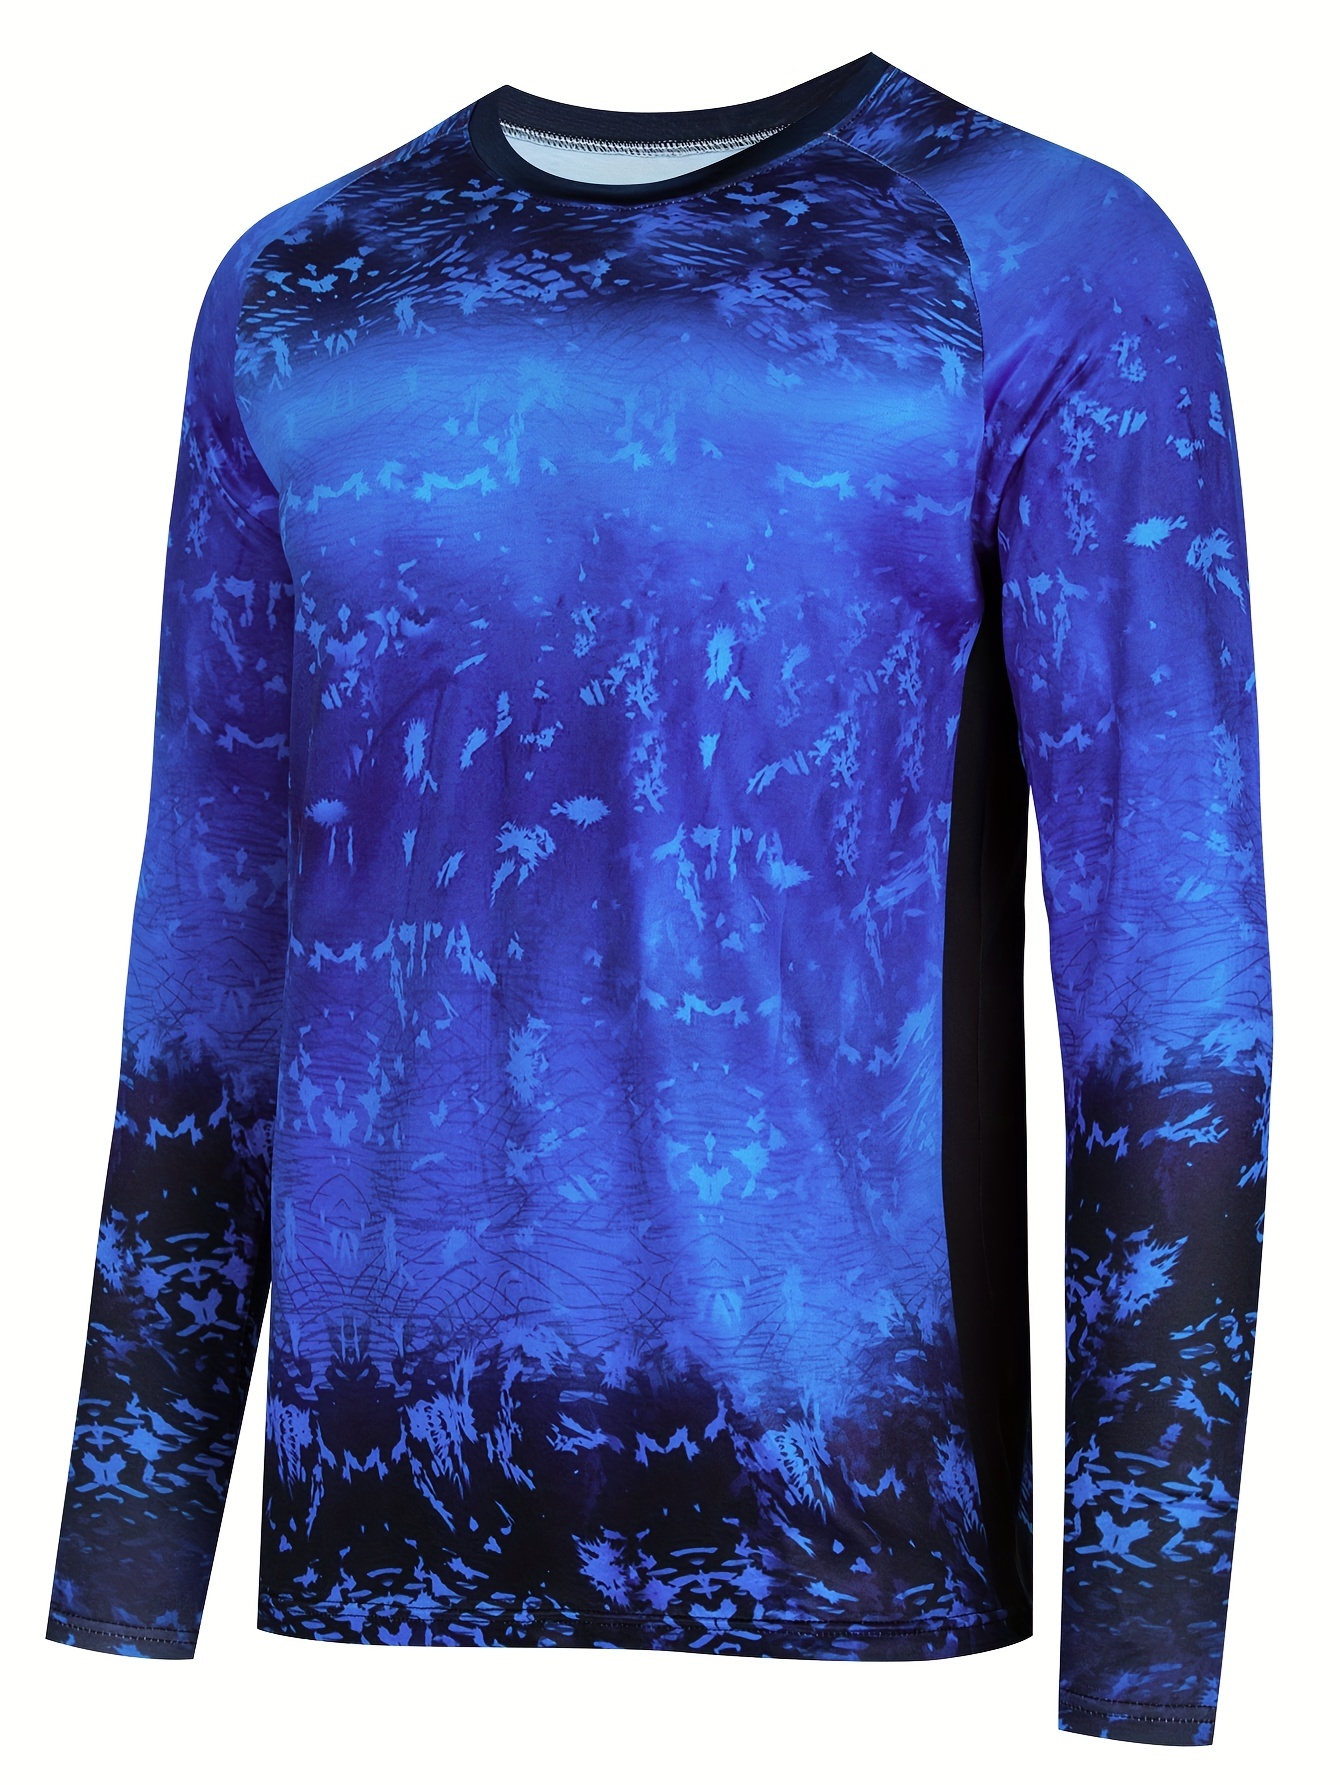 Magellan Outdoors, Shirts, Mens Magellan Outdoors Long Sleeve Fishing  Shirt Light Weight Light Blue